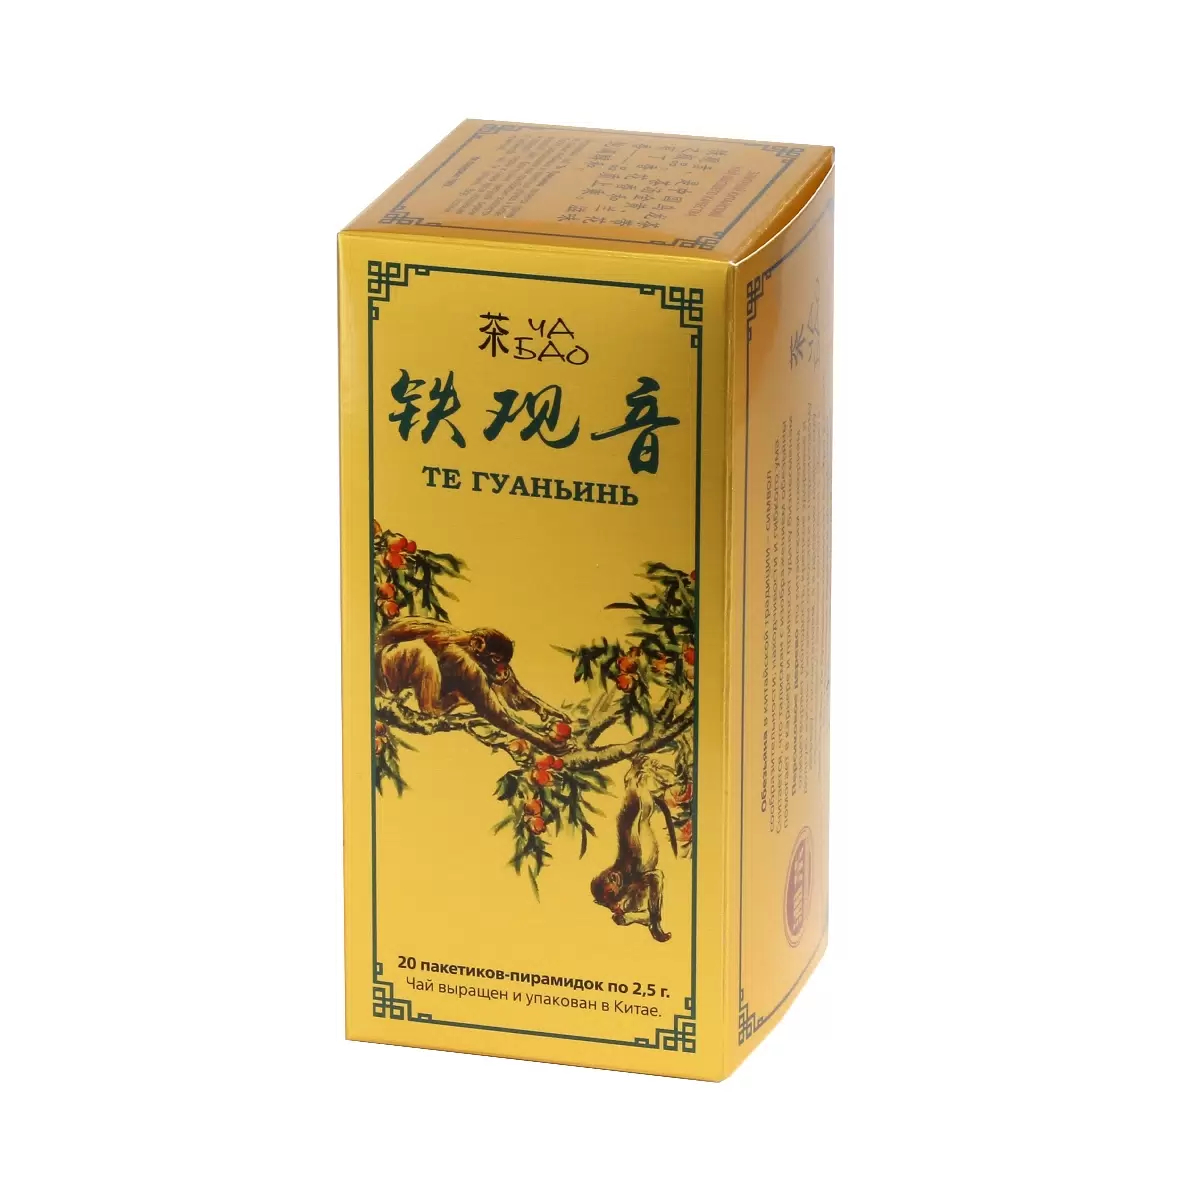 Чай бирюзовый Ча Бао Те Гуаньинь 20 пакетиков 50 г чай красный хун ча с бамбуковыми листьями 50 г